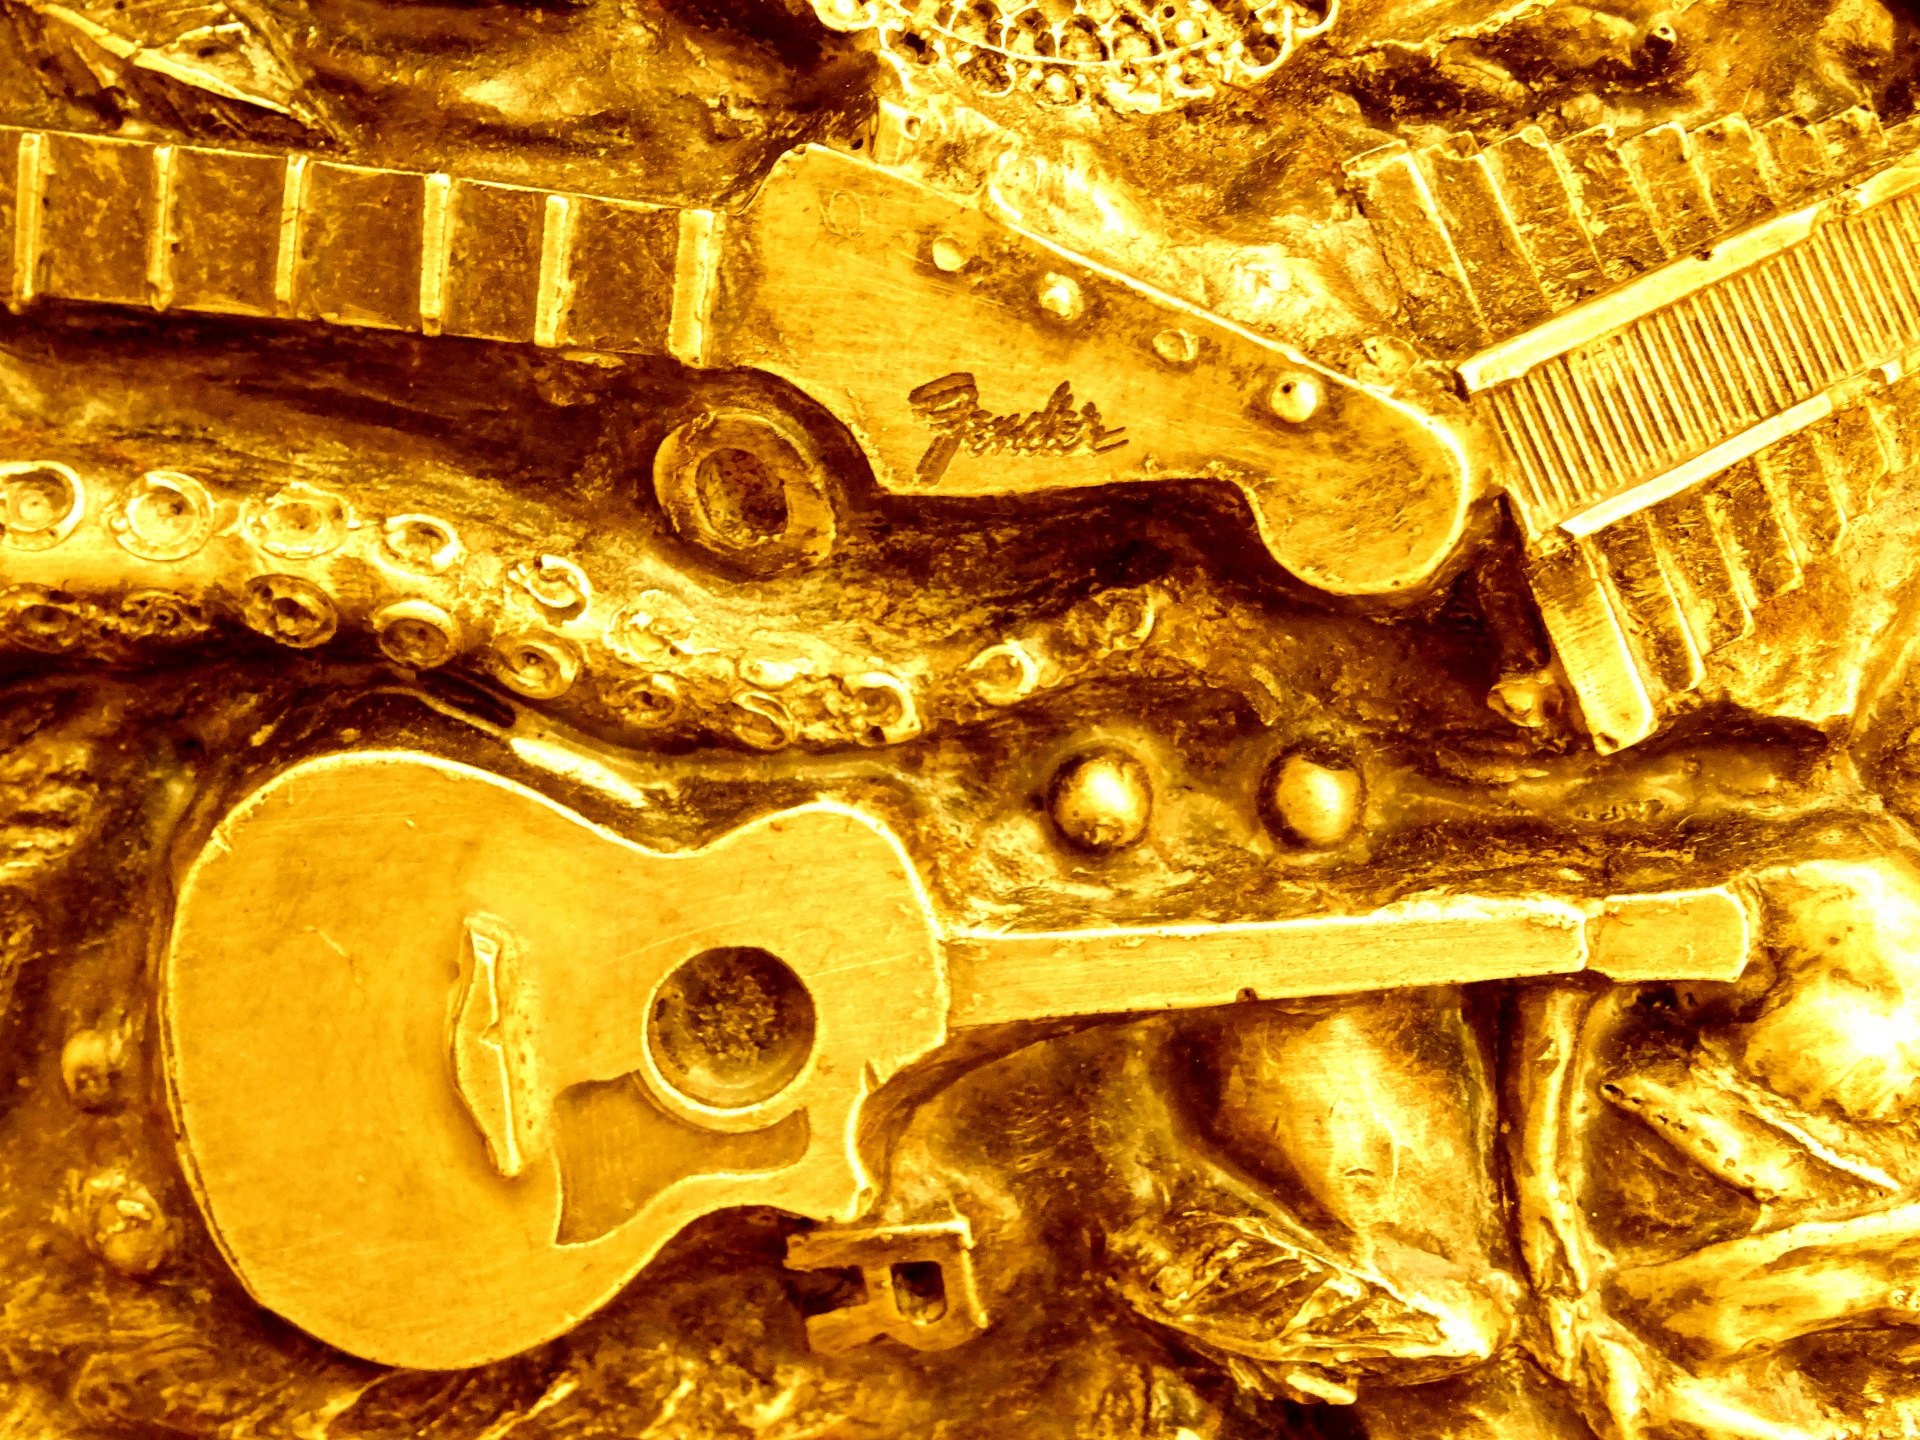 yellow guitar guitars free photo